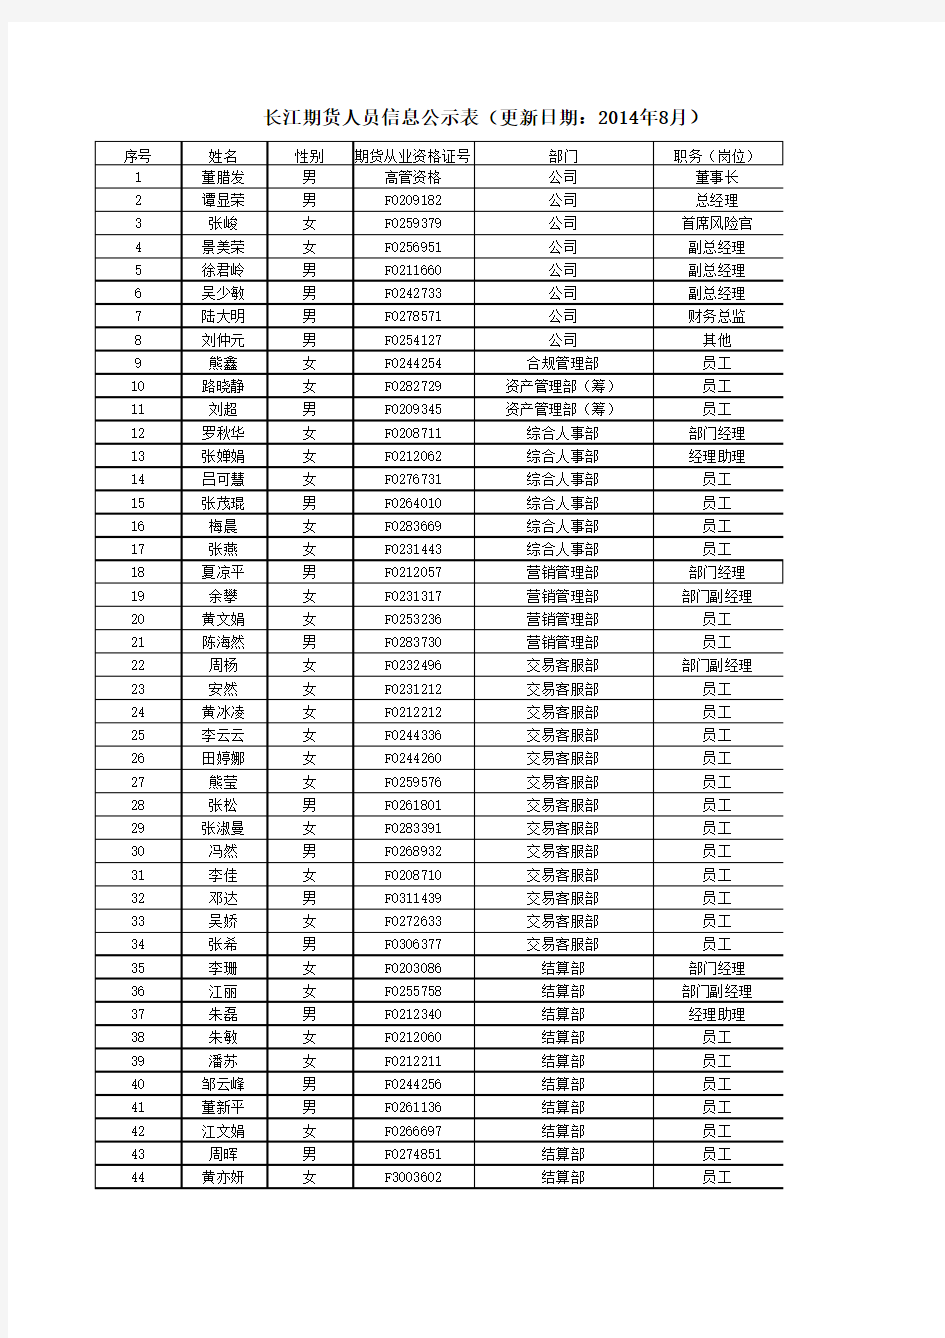 长江期货人员信息公示表(更新日期：2014年8月)xls-201408